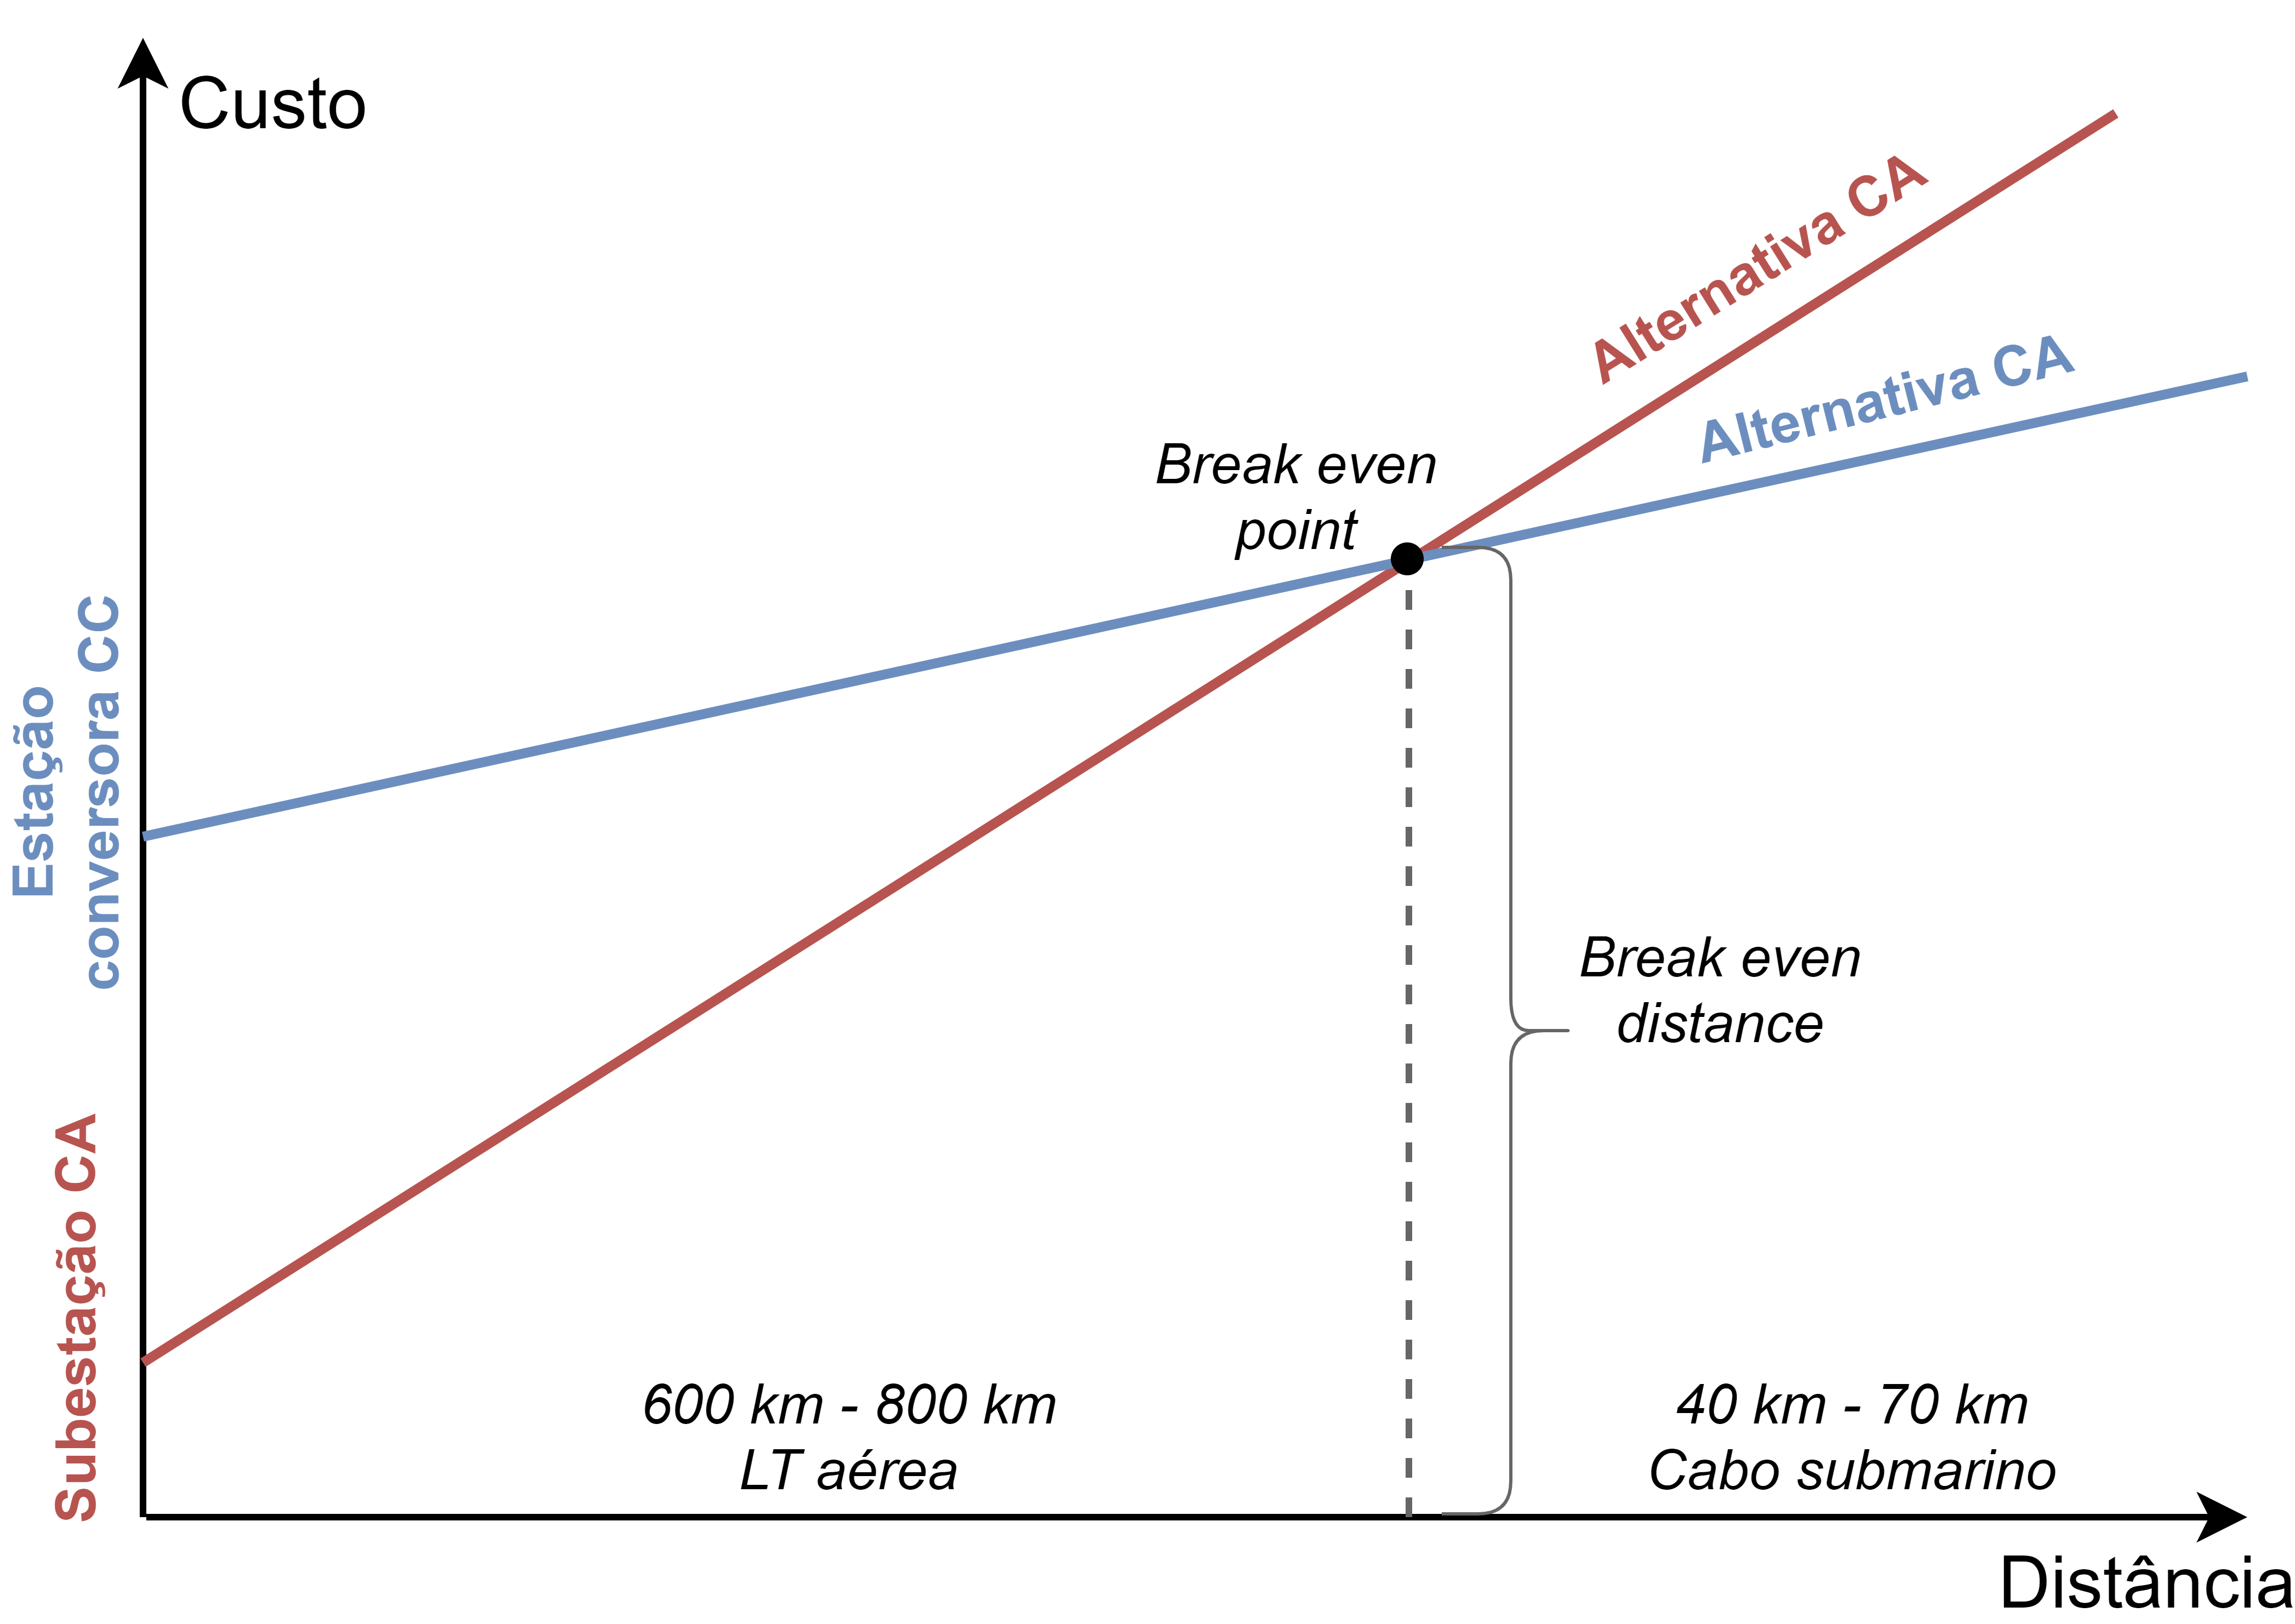 Comparação entre as alternativas de transmissão CA e CC